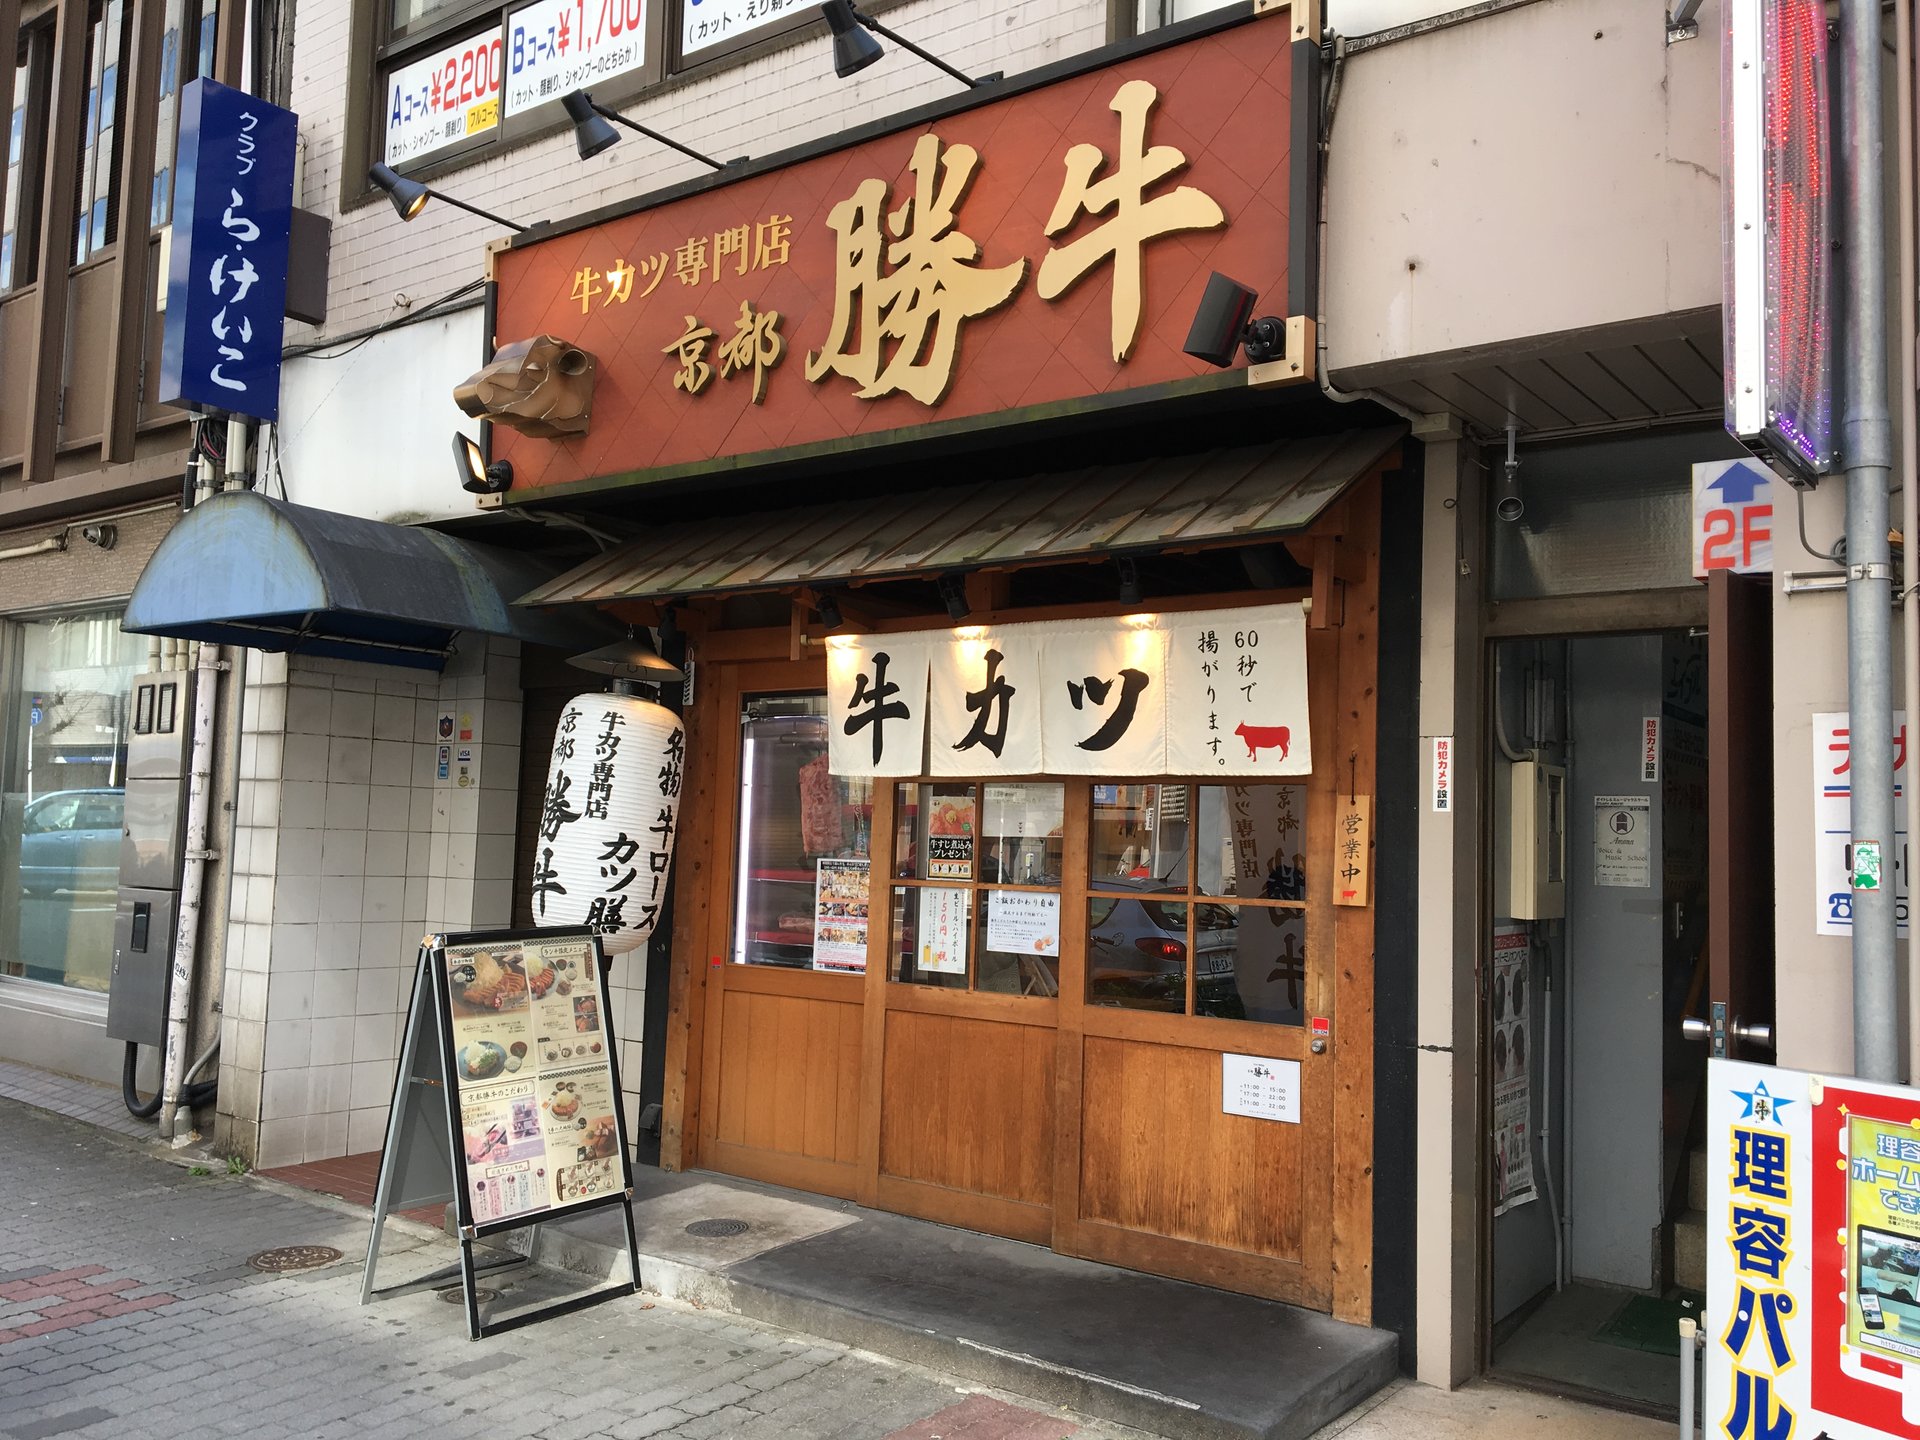 牛カツ専門店〜京都〜勝牛
肉を食べたくなったら迷わずここ！